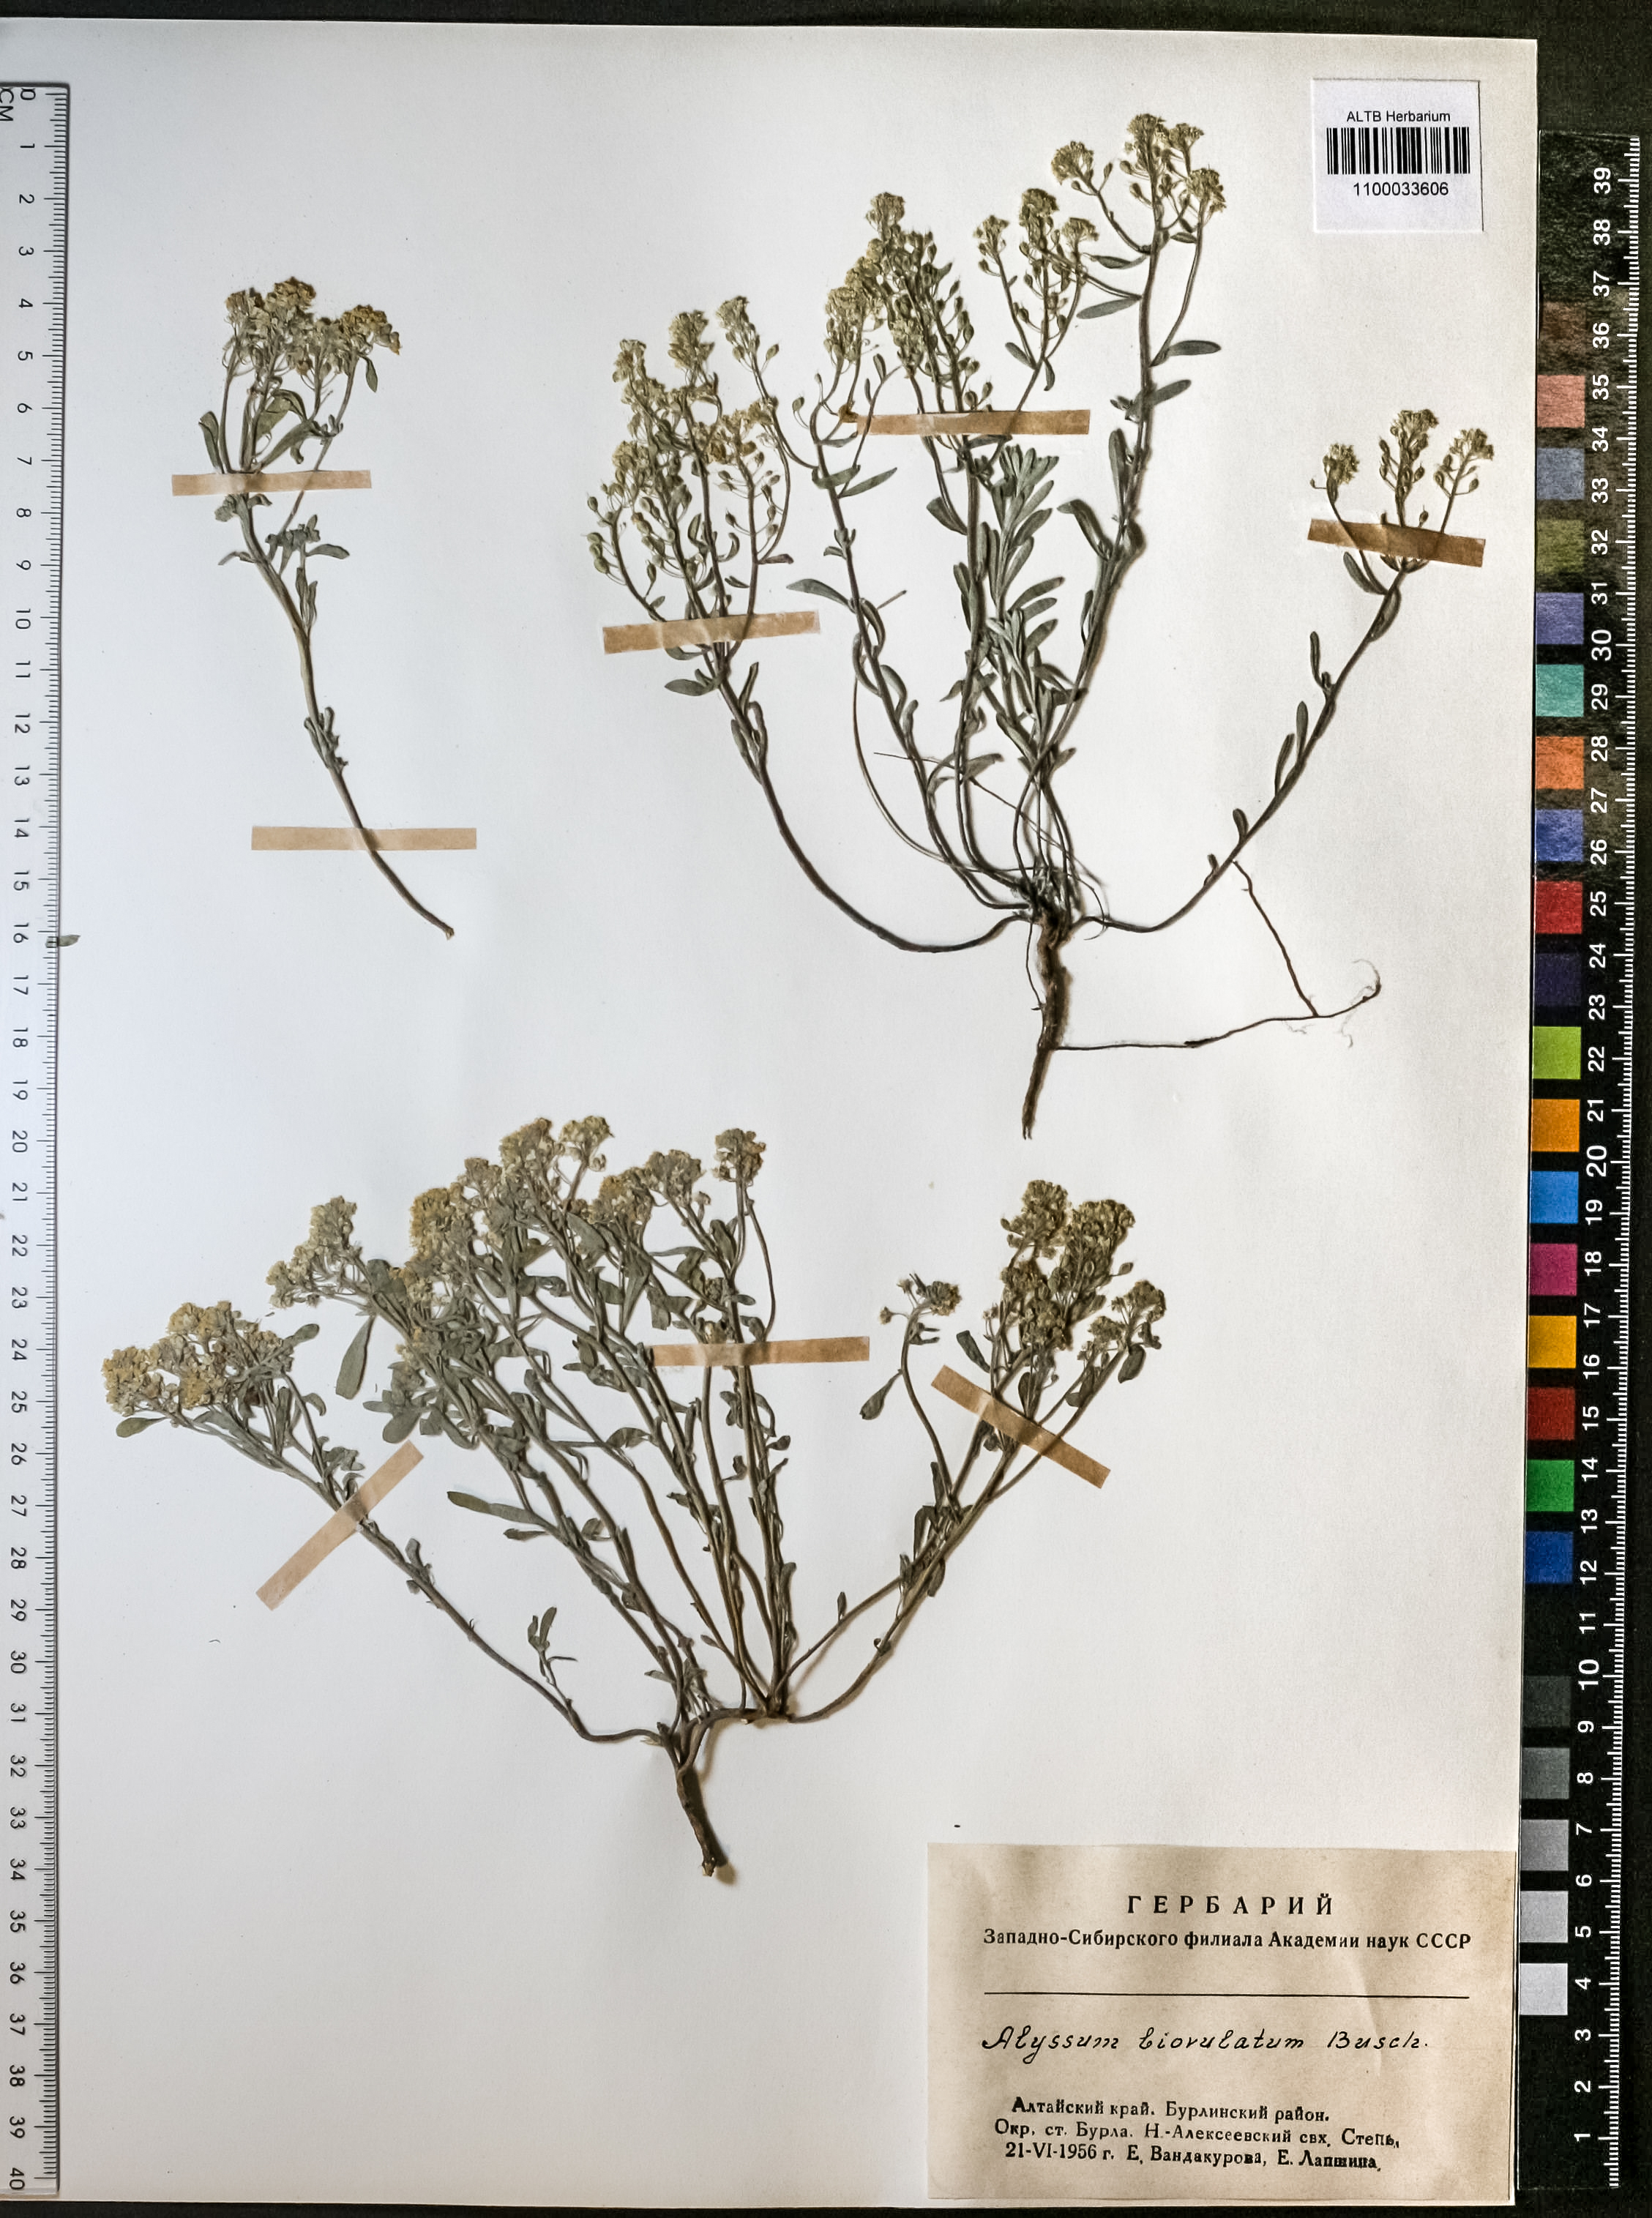 Alyssum biovulatum N.Busch